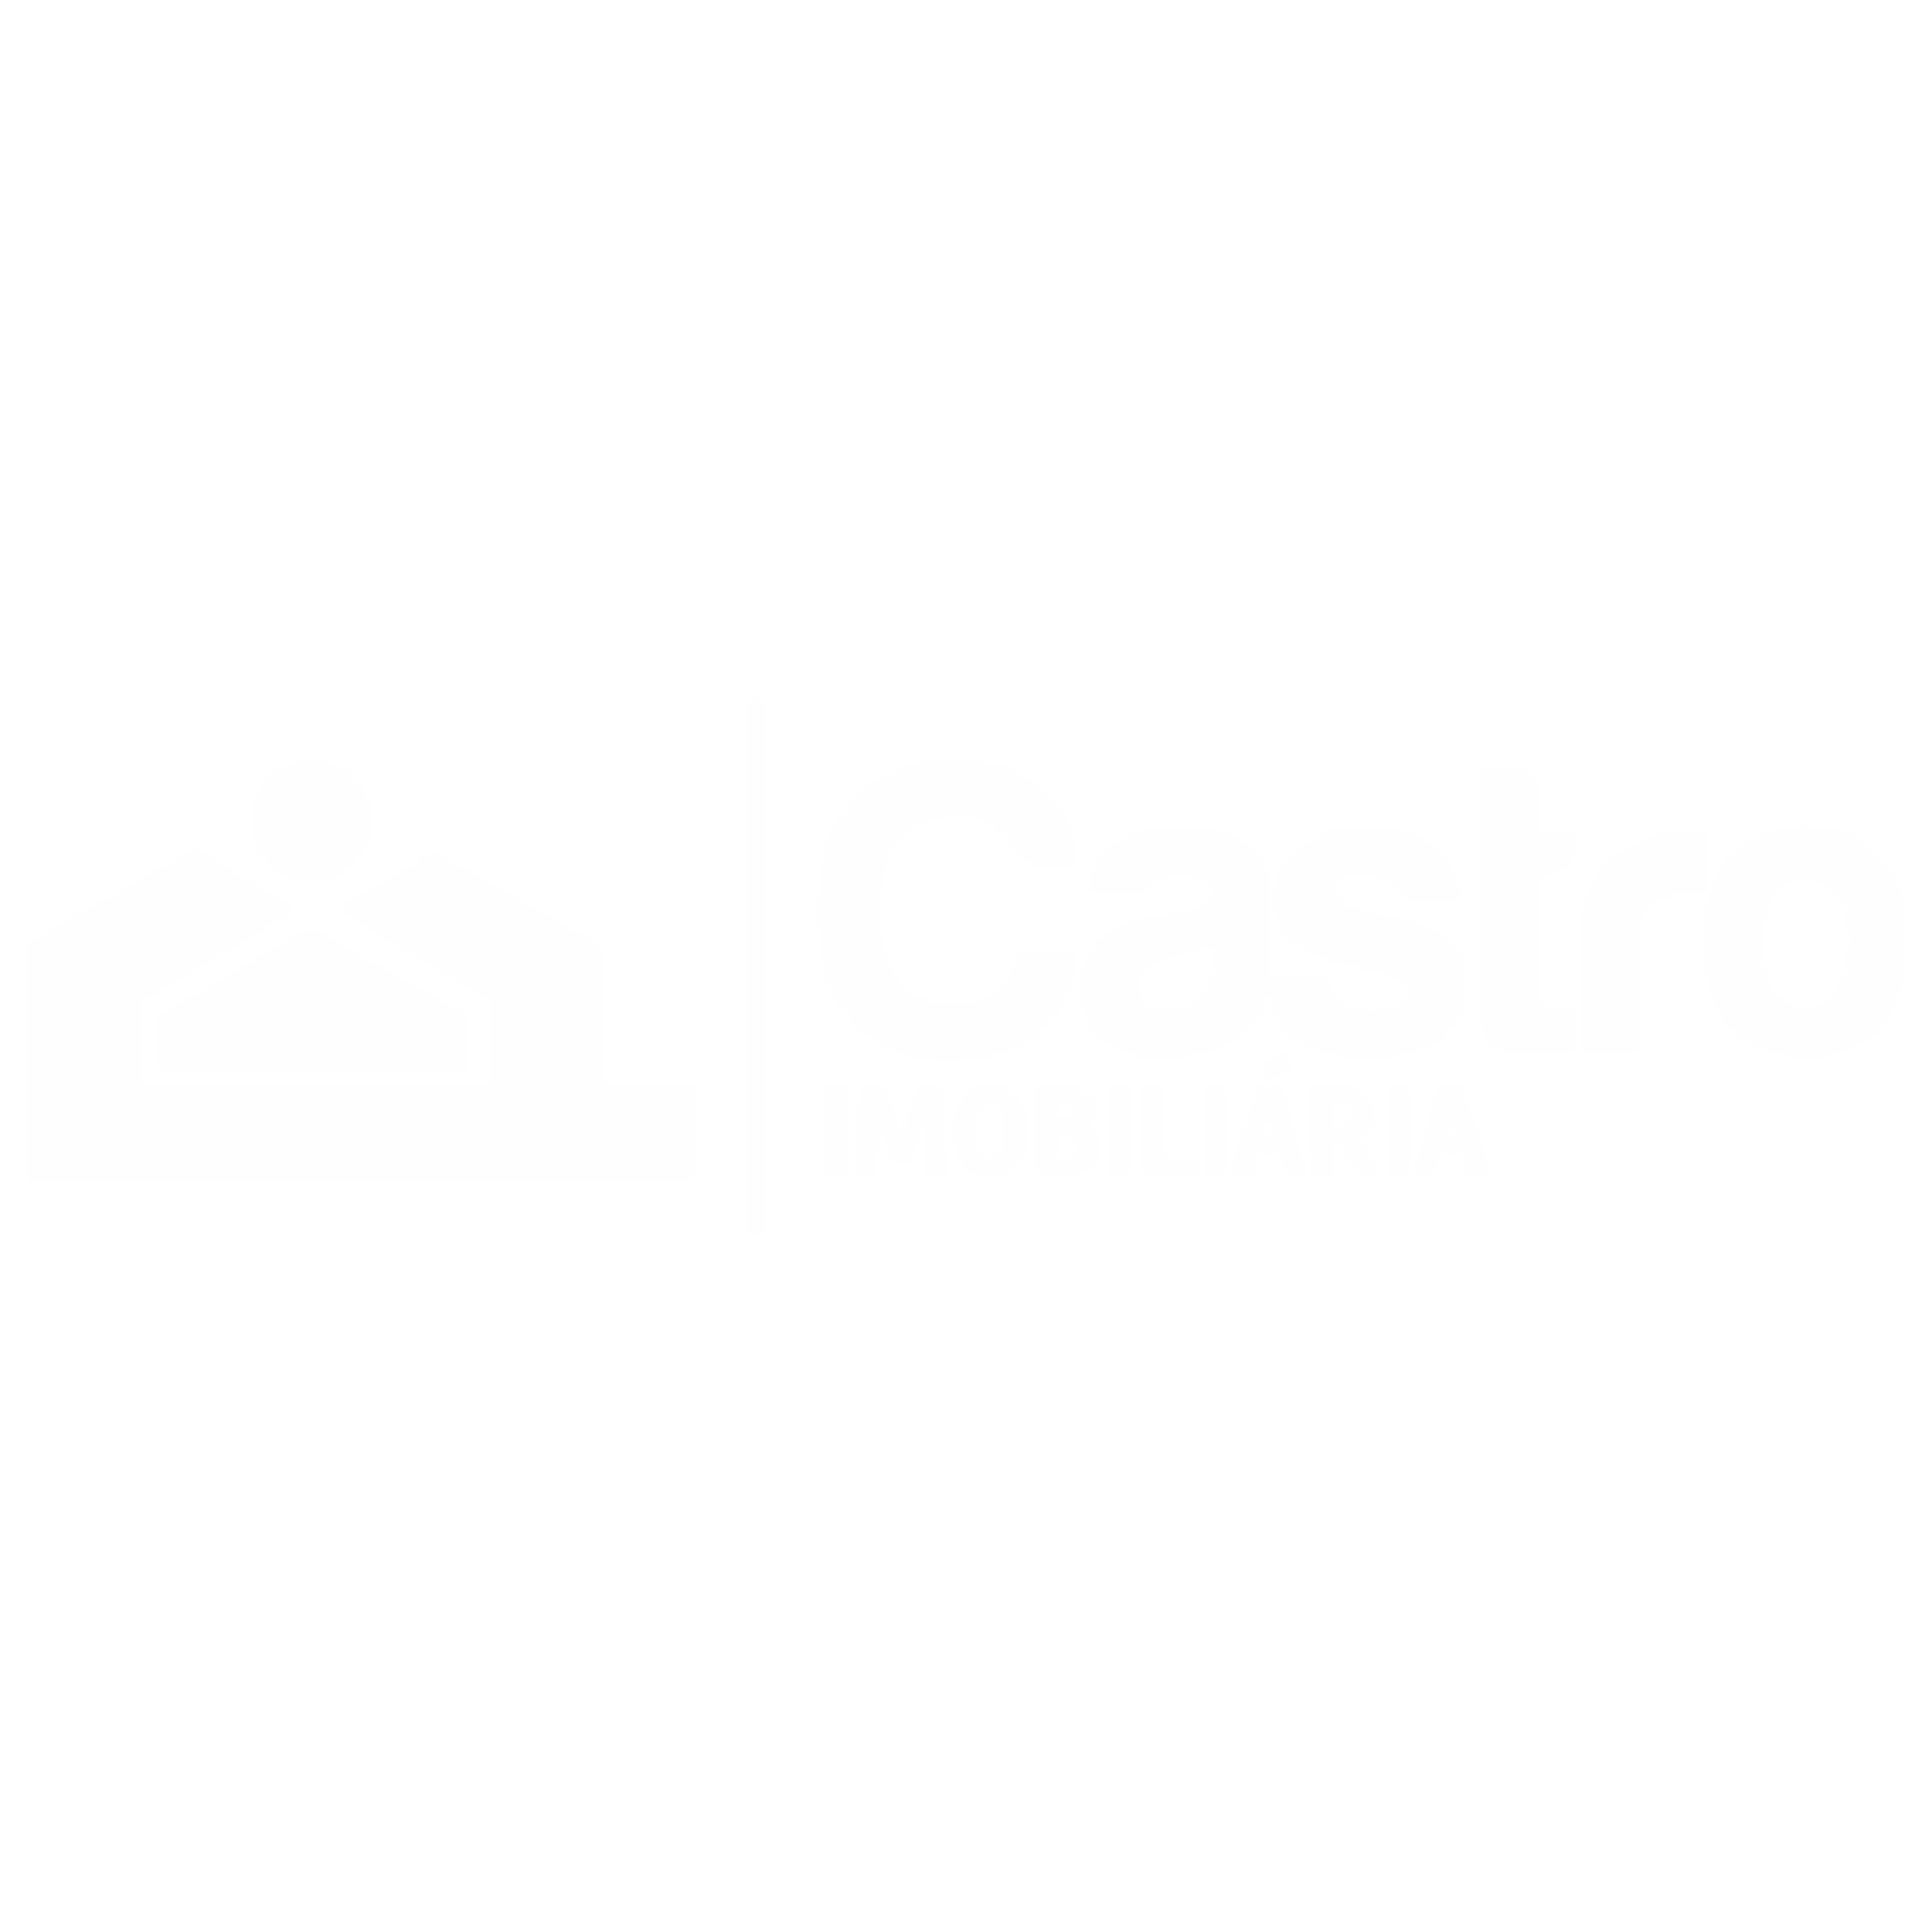 Castro Imobiliária - Sua imobiliária Castro Imobiliária